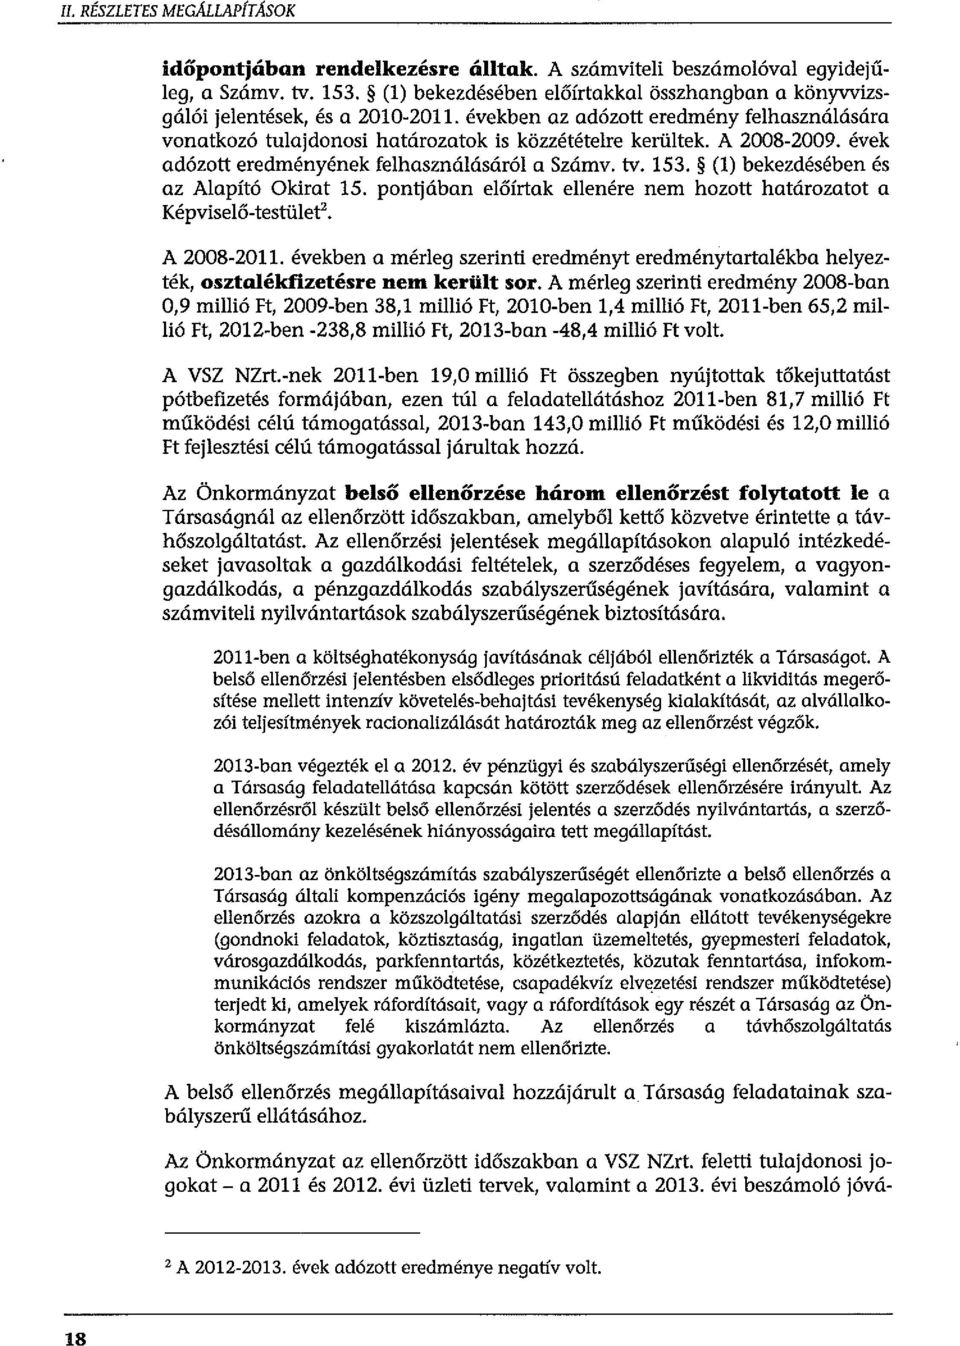 A 2008-2009. évek adózott eredményének felhasználásáról a Számv. tv. 153. (1) bekezdésében és az Alapító Okirat 15. pontjában előírtak ellenére nem hozott határozatot a Képviselő-testület'.